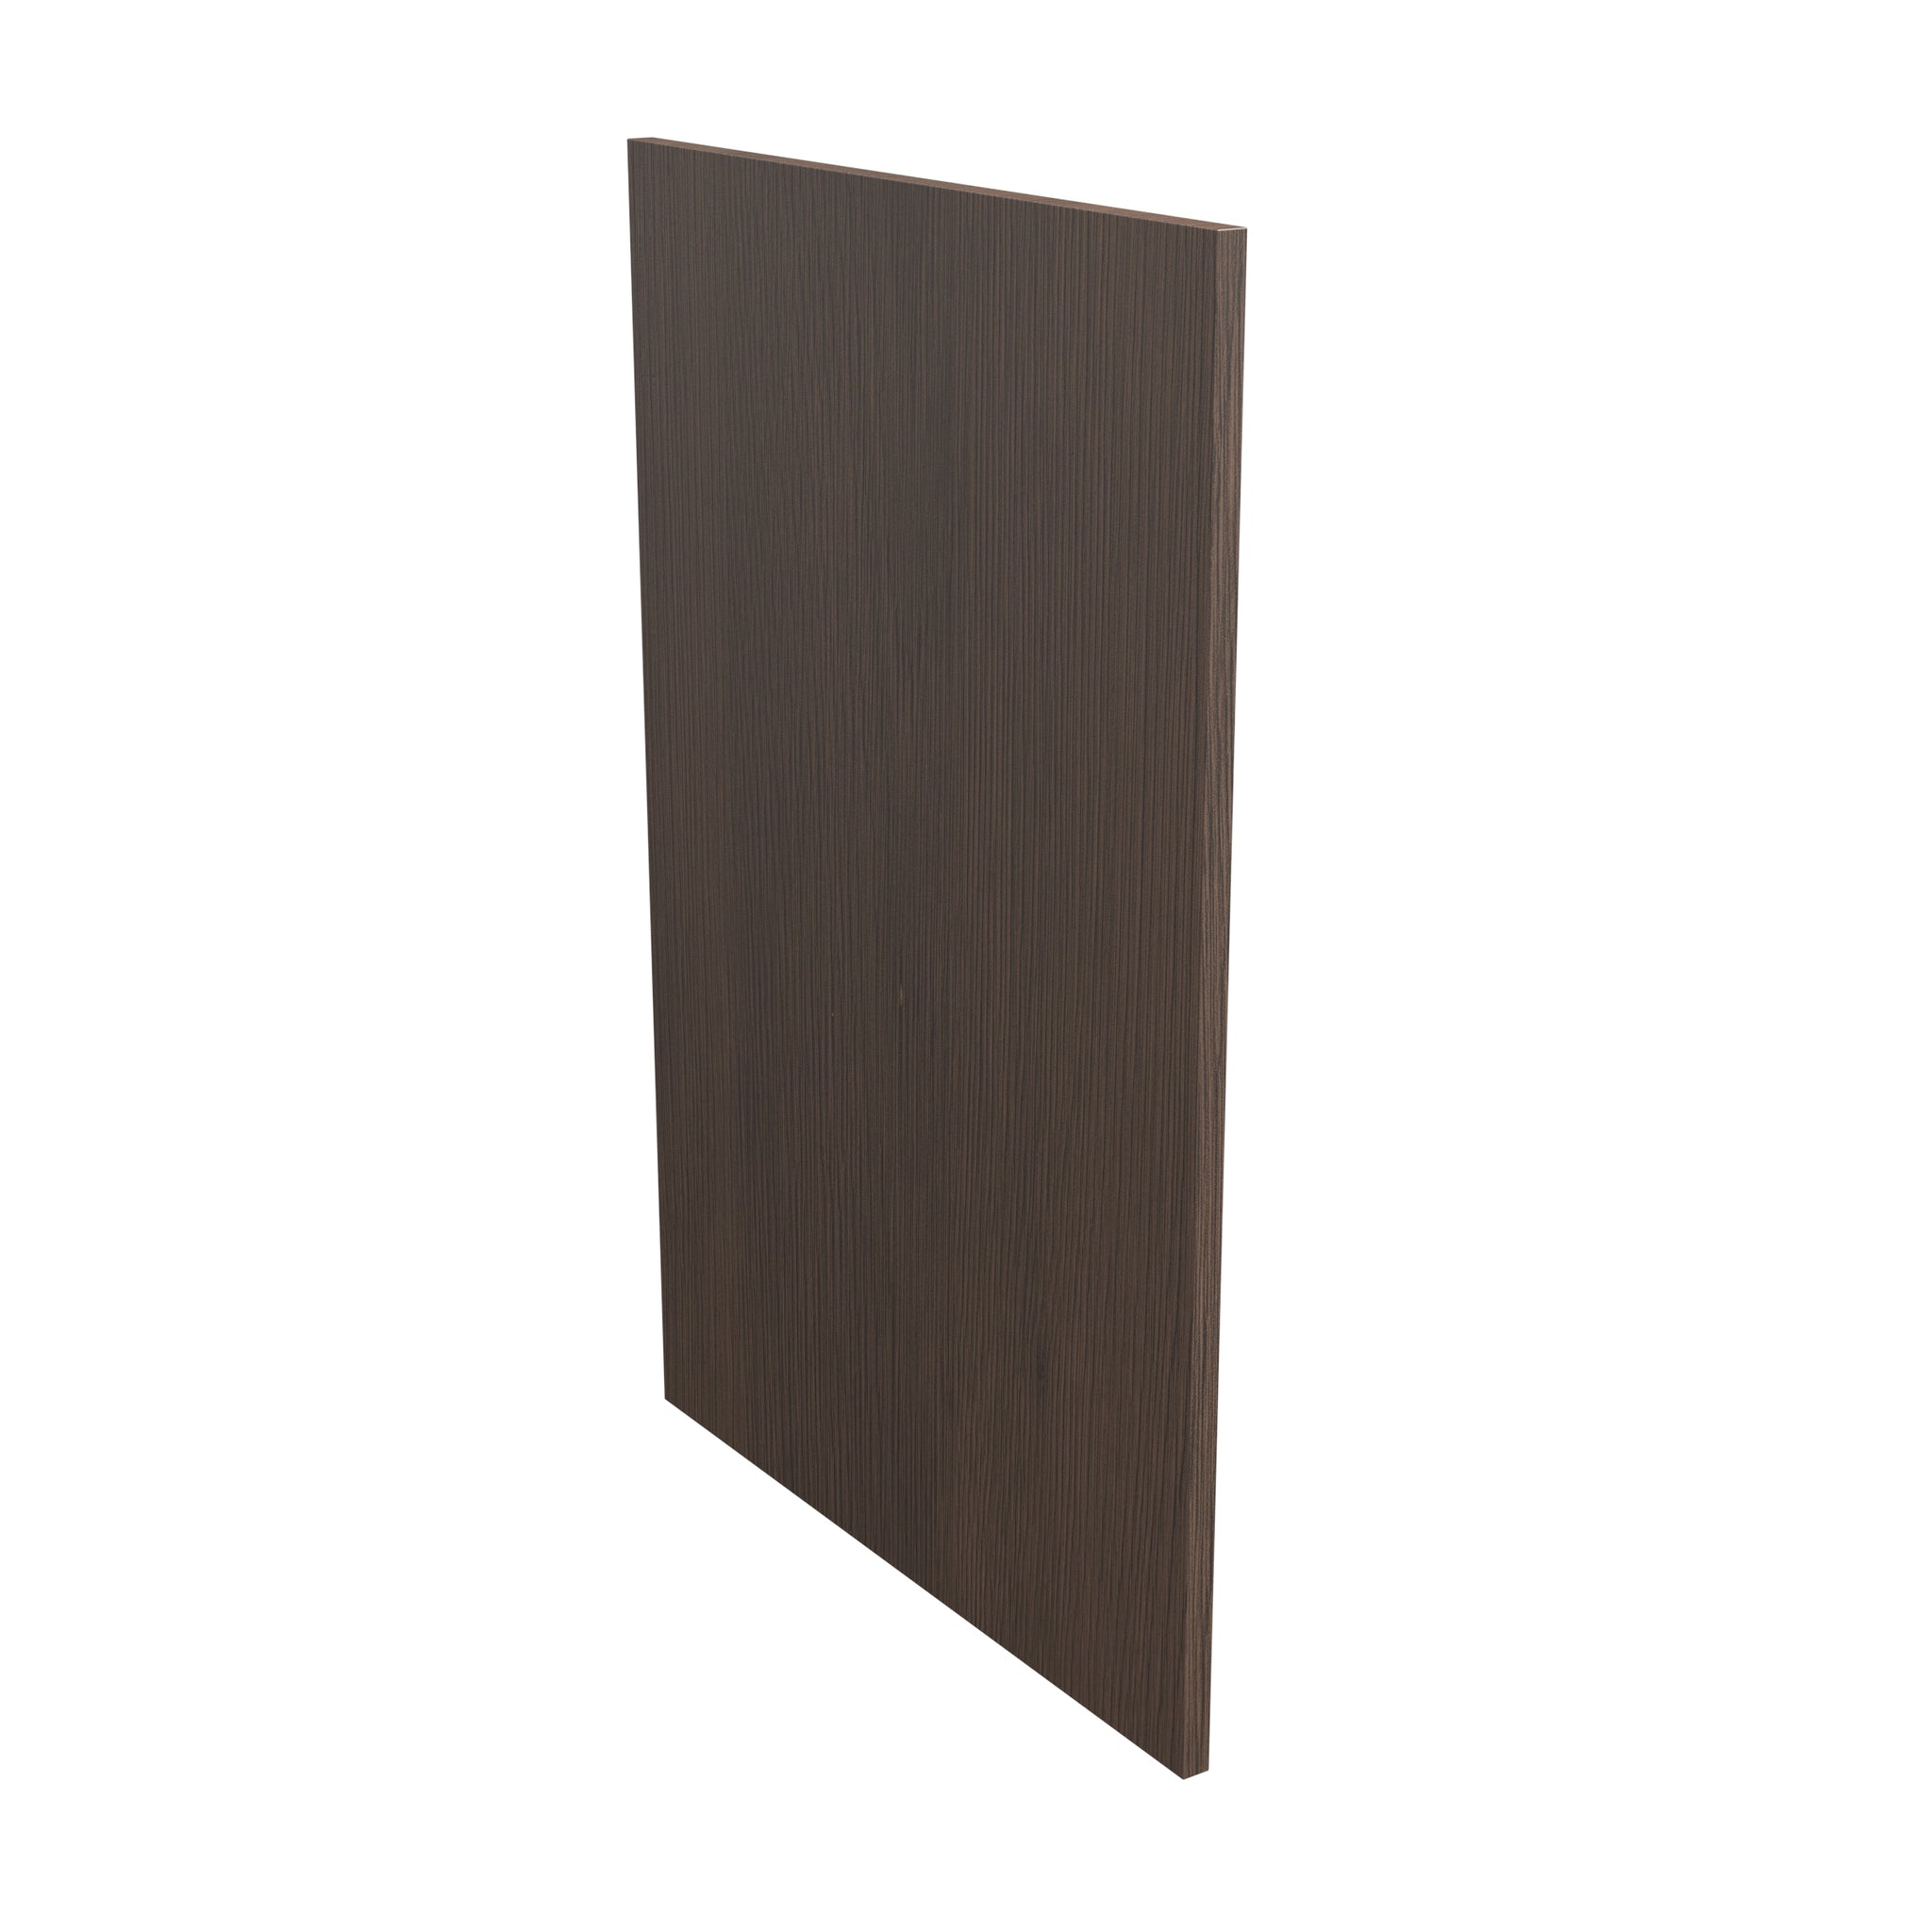 Base End Panel| Matrix Silver | 0.75W x 34.5H x 24D